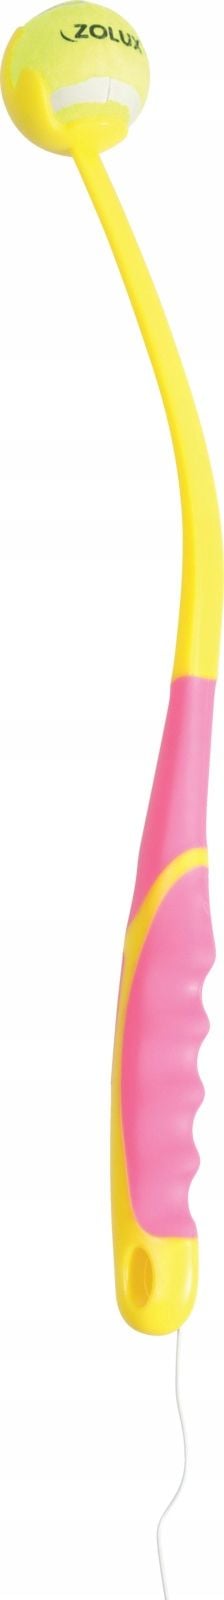 Lansator de mingi Zolux ZOLUX Toy TPR SUNSET S roz